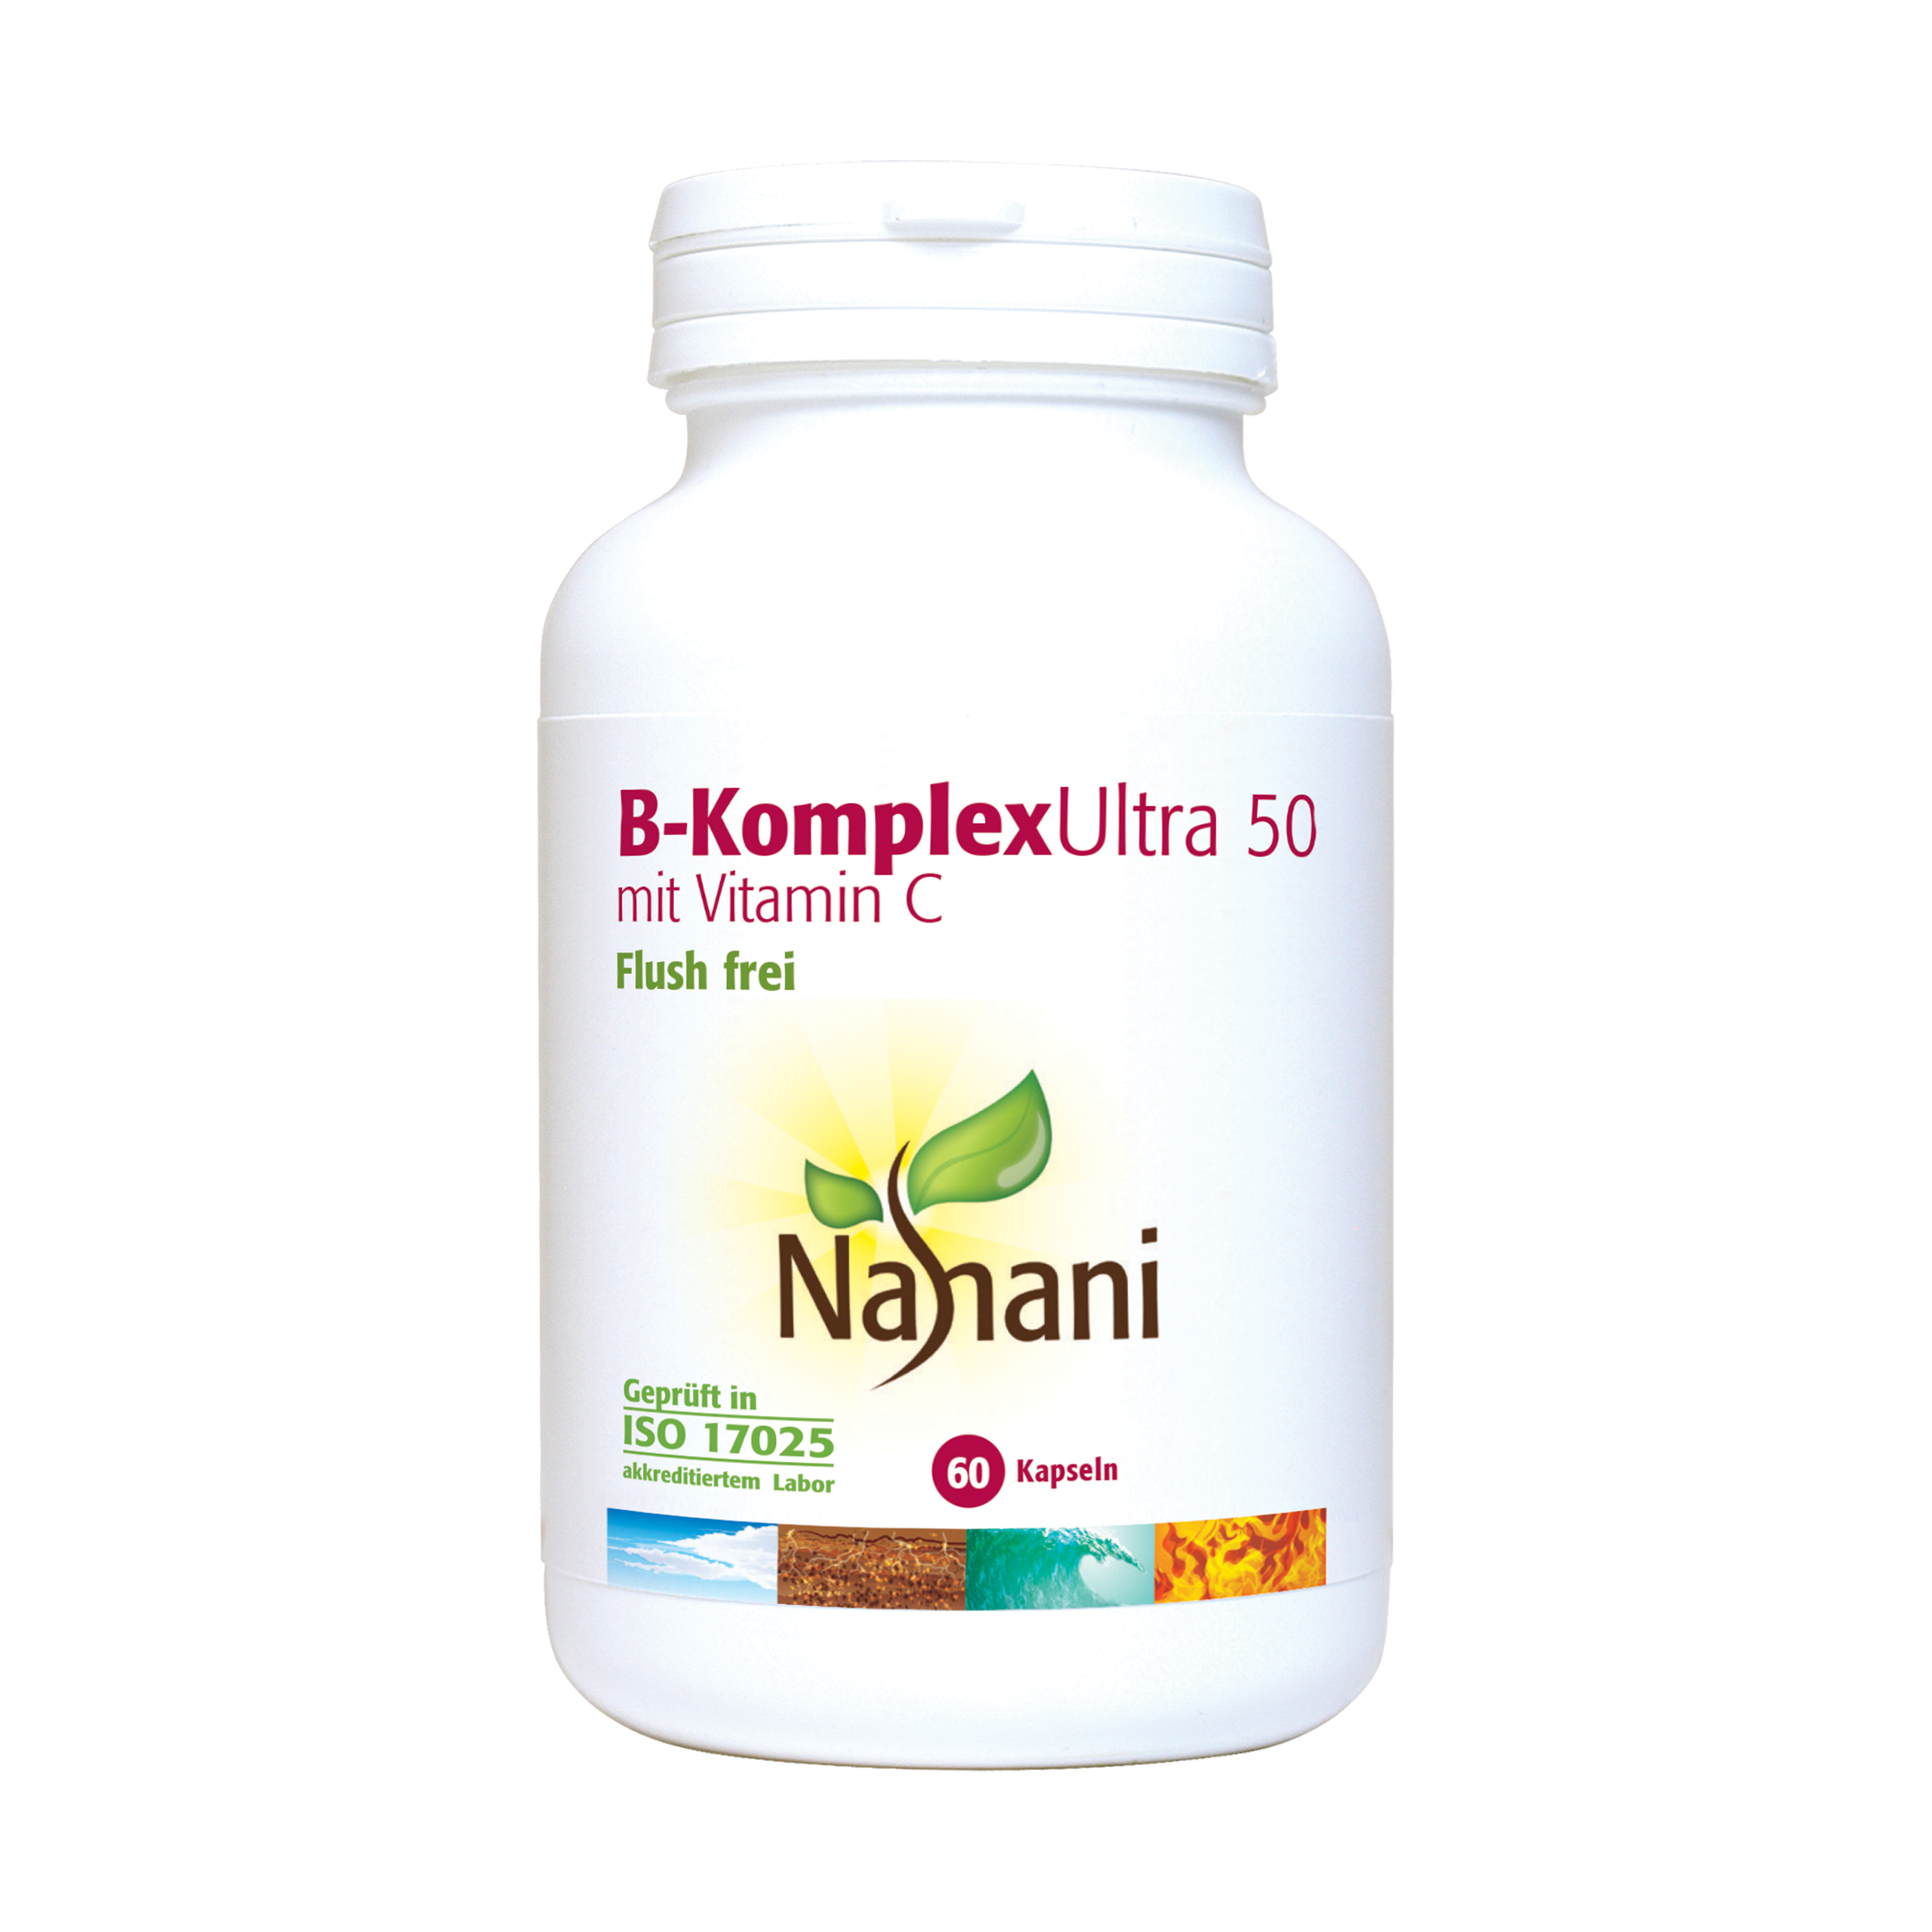 Neues Format des Produkts B-Komplex Ultra 50 mit Vitamin C (Code 0901) 